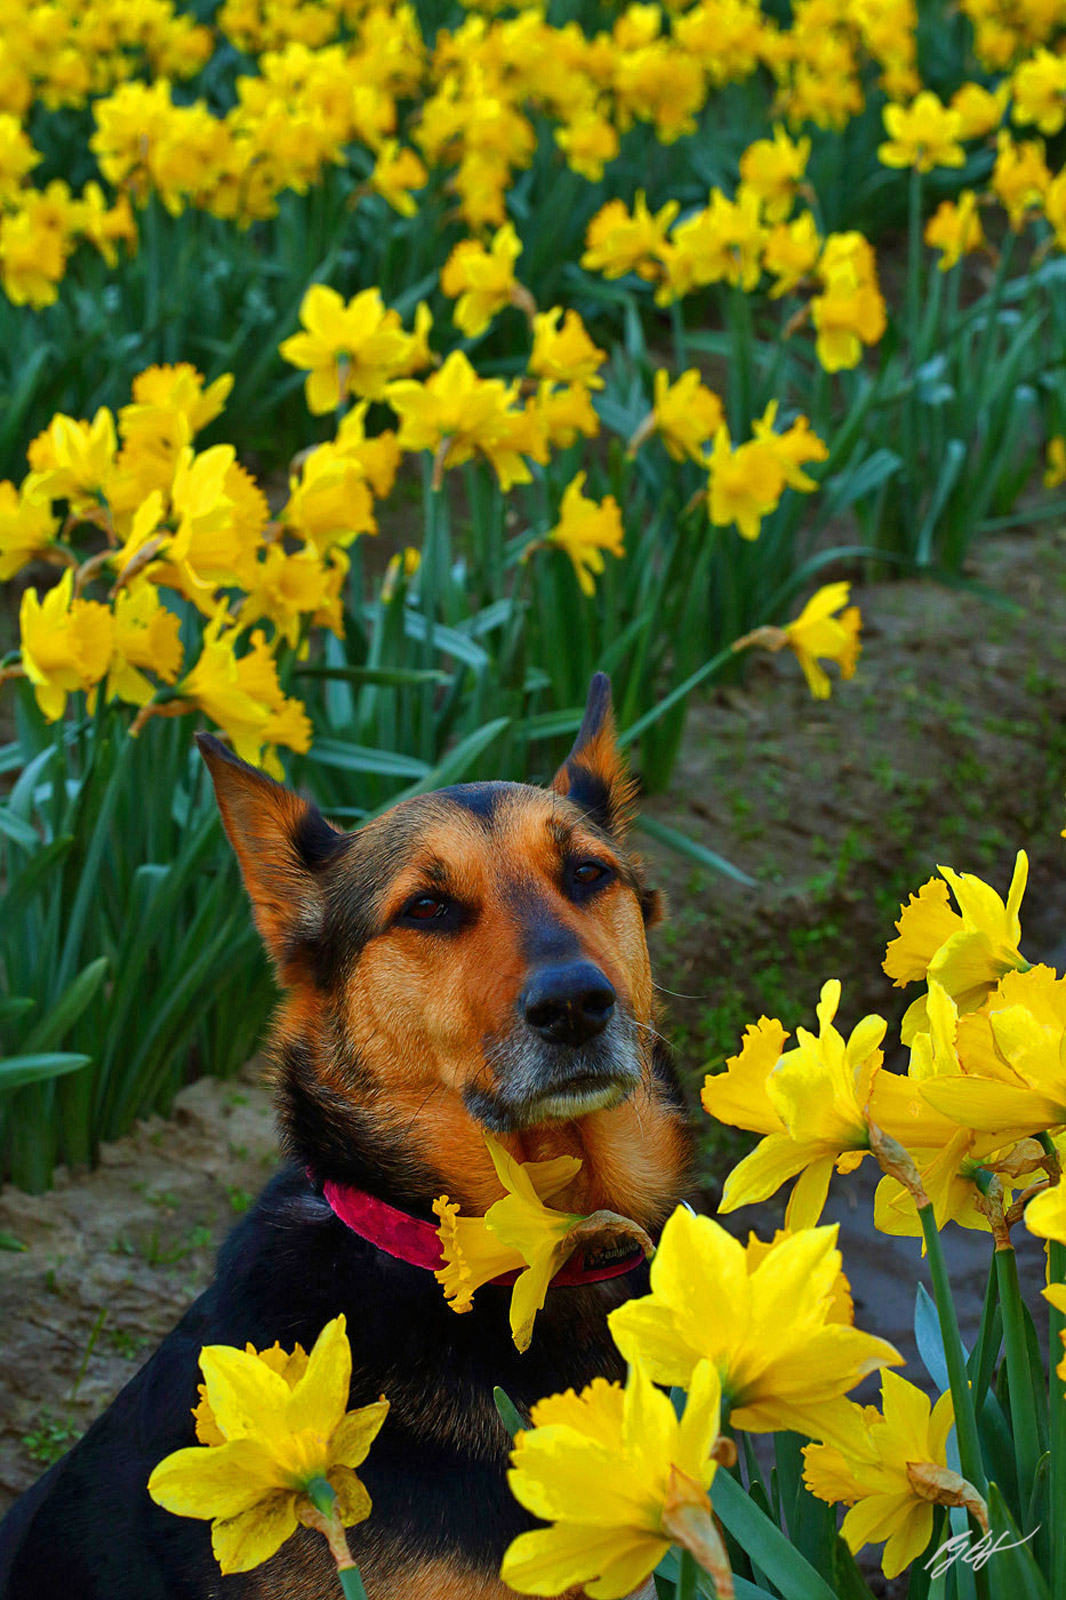 Shyla Dog and Daffodils in Skagit Valley in Washington